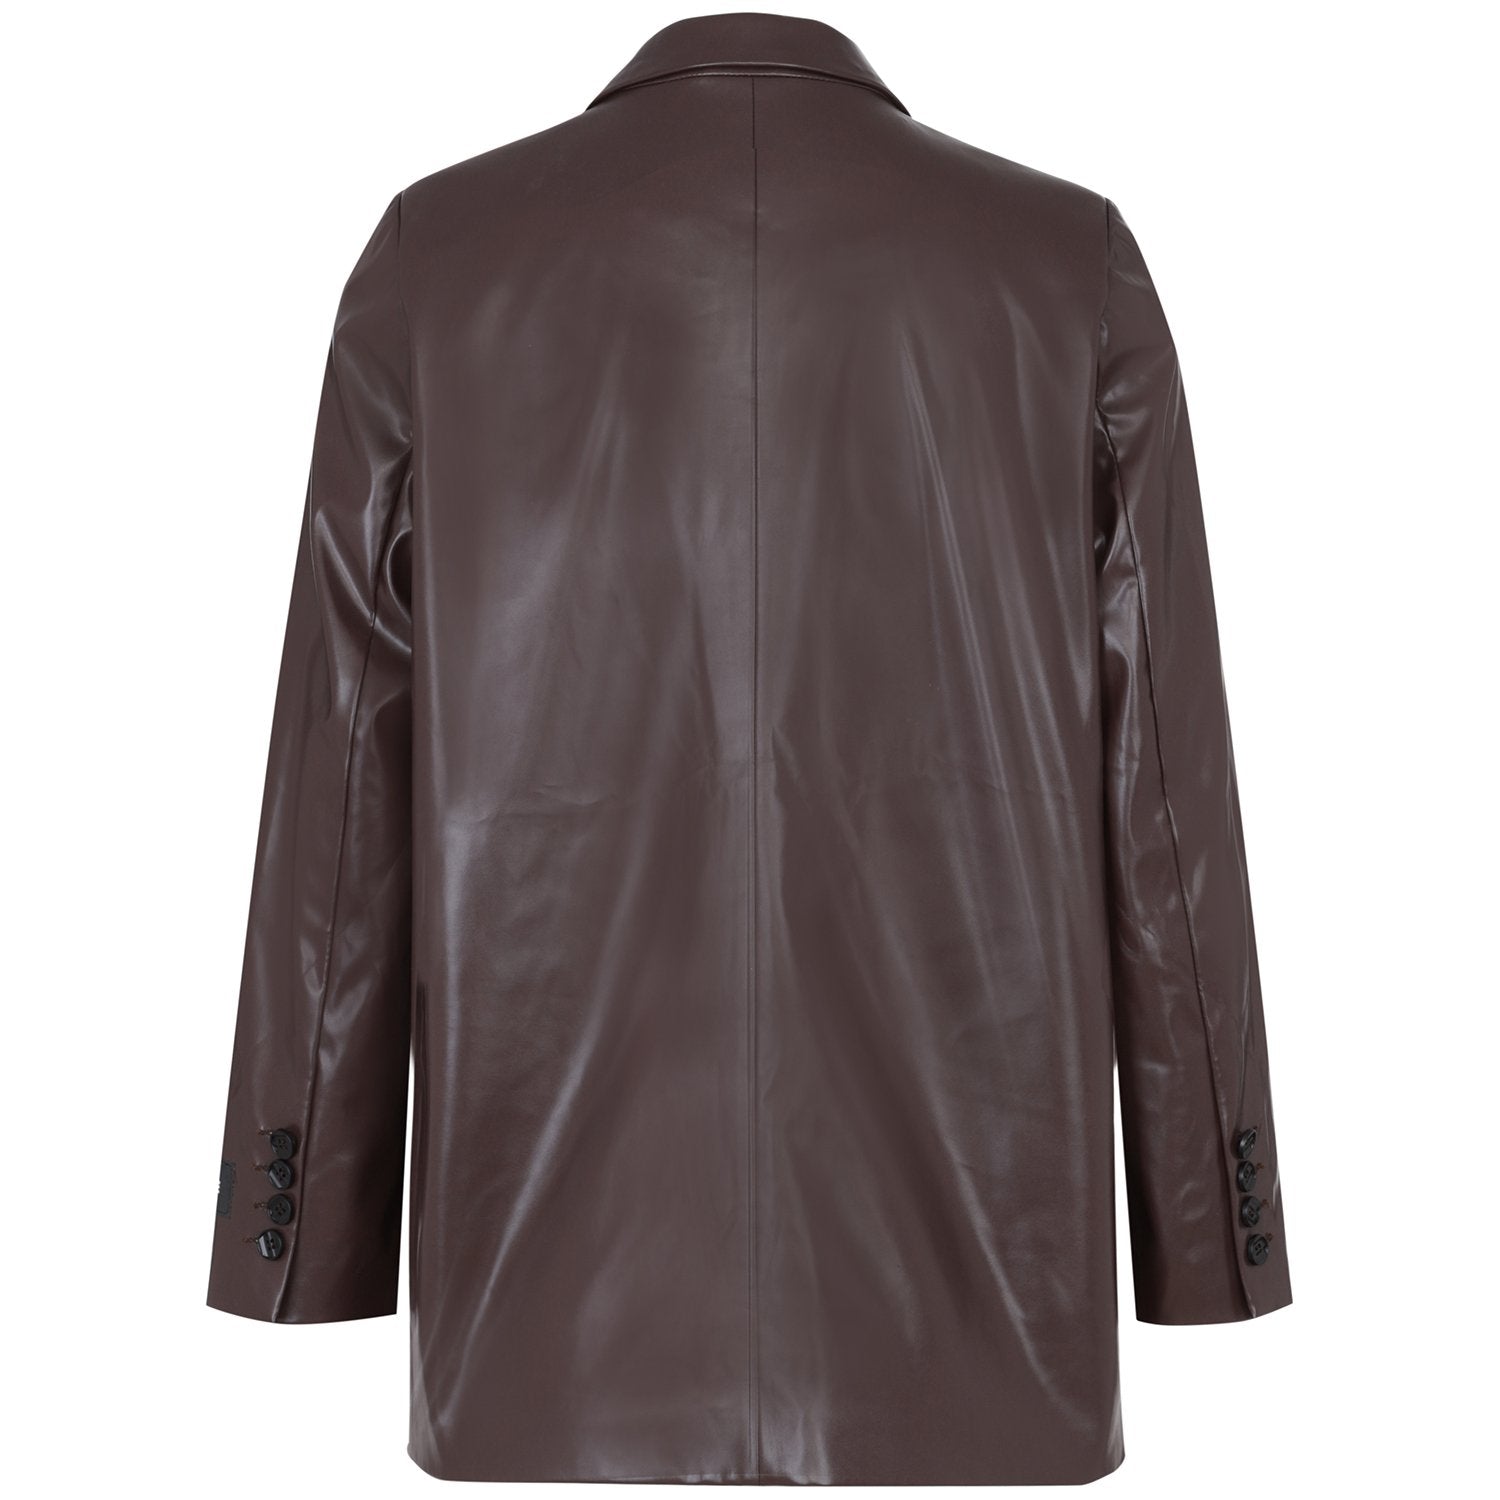 Sixth June - Veste blazer simili cuir Marron